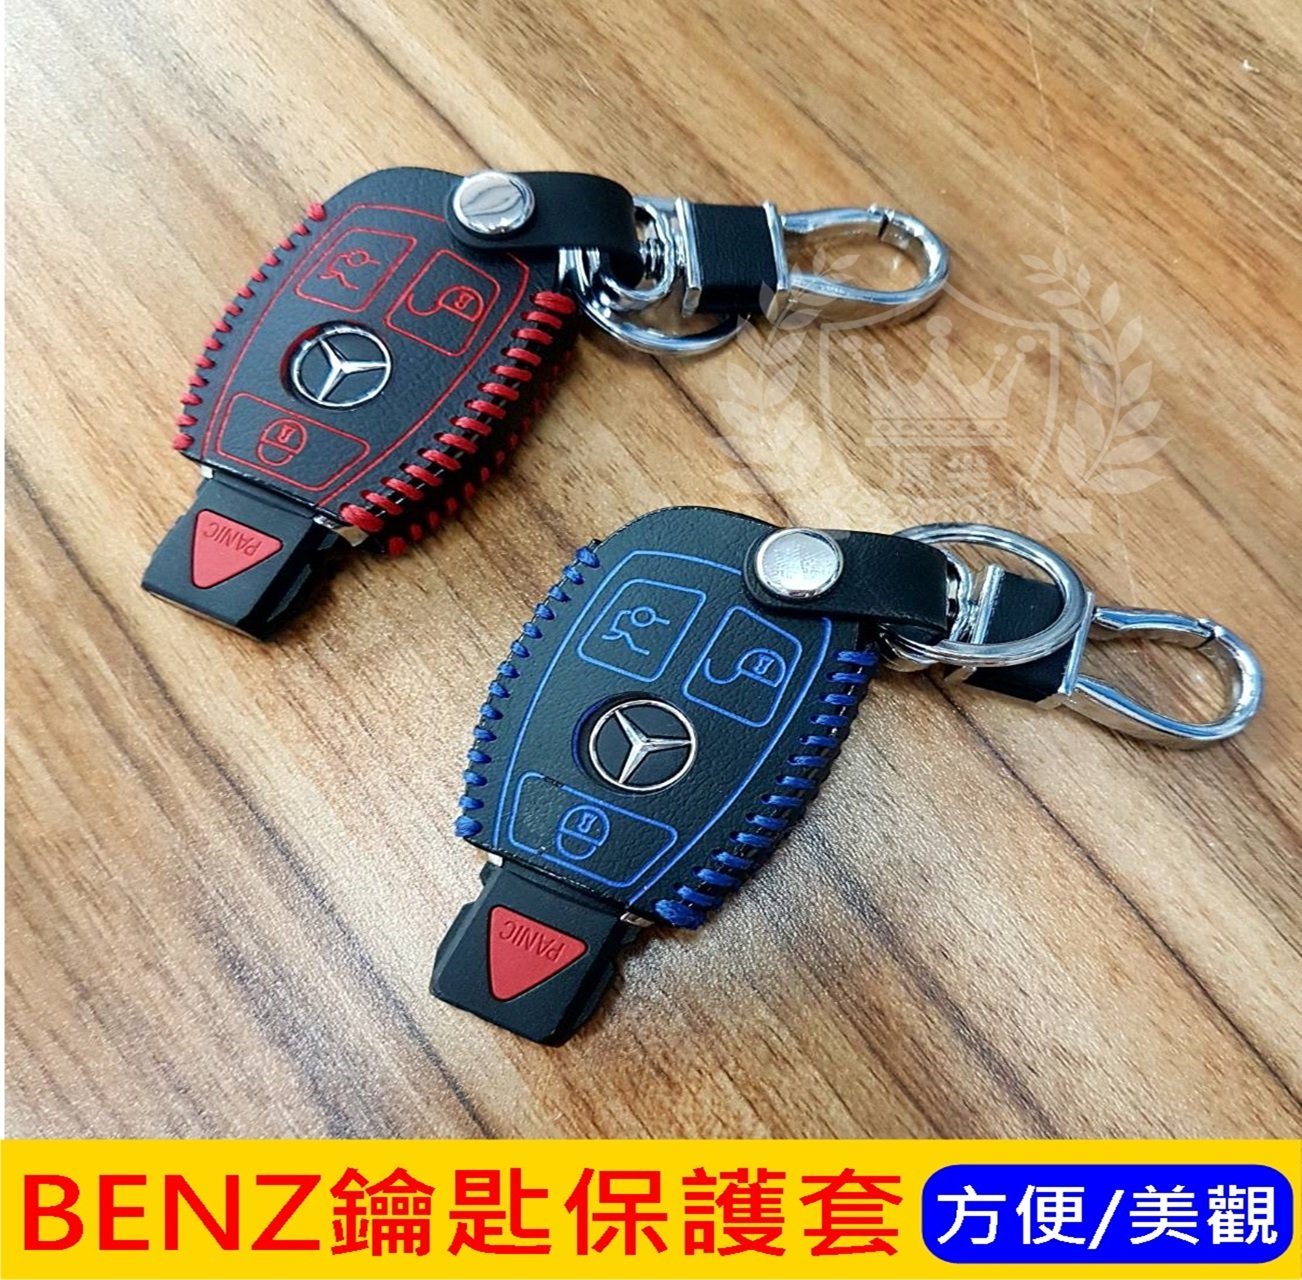 Benz賓士【GLA/GLC/CLA鑰匙套】W204 W205 C300 C180 C200專用 遙控器皮套 鑰匙保護套